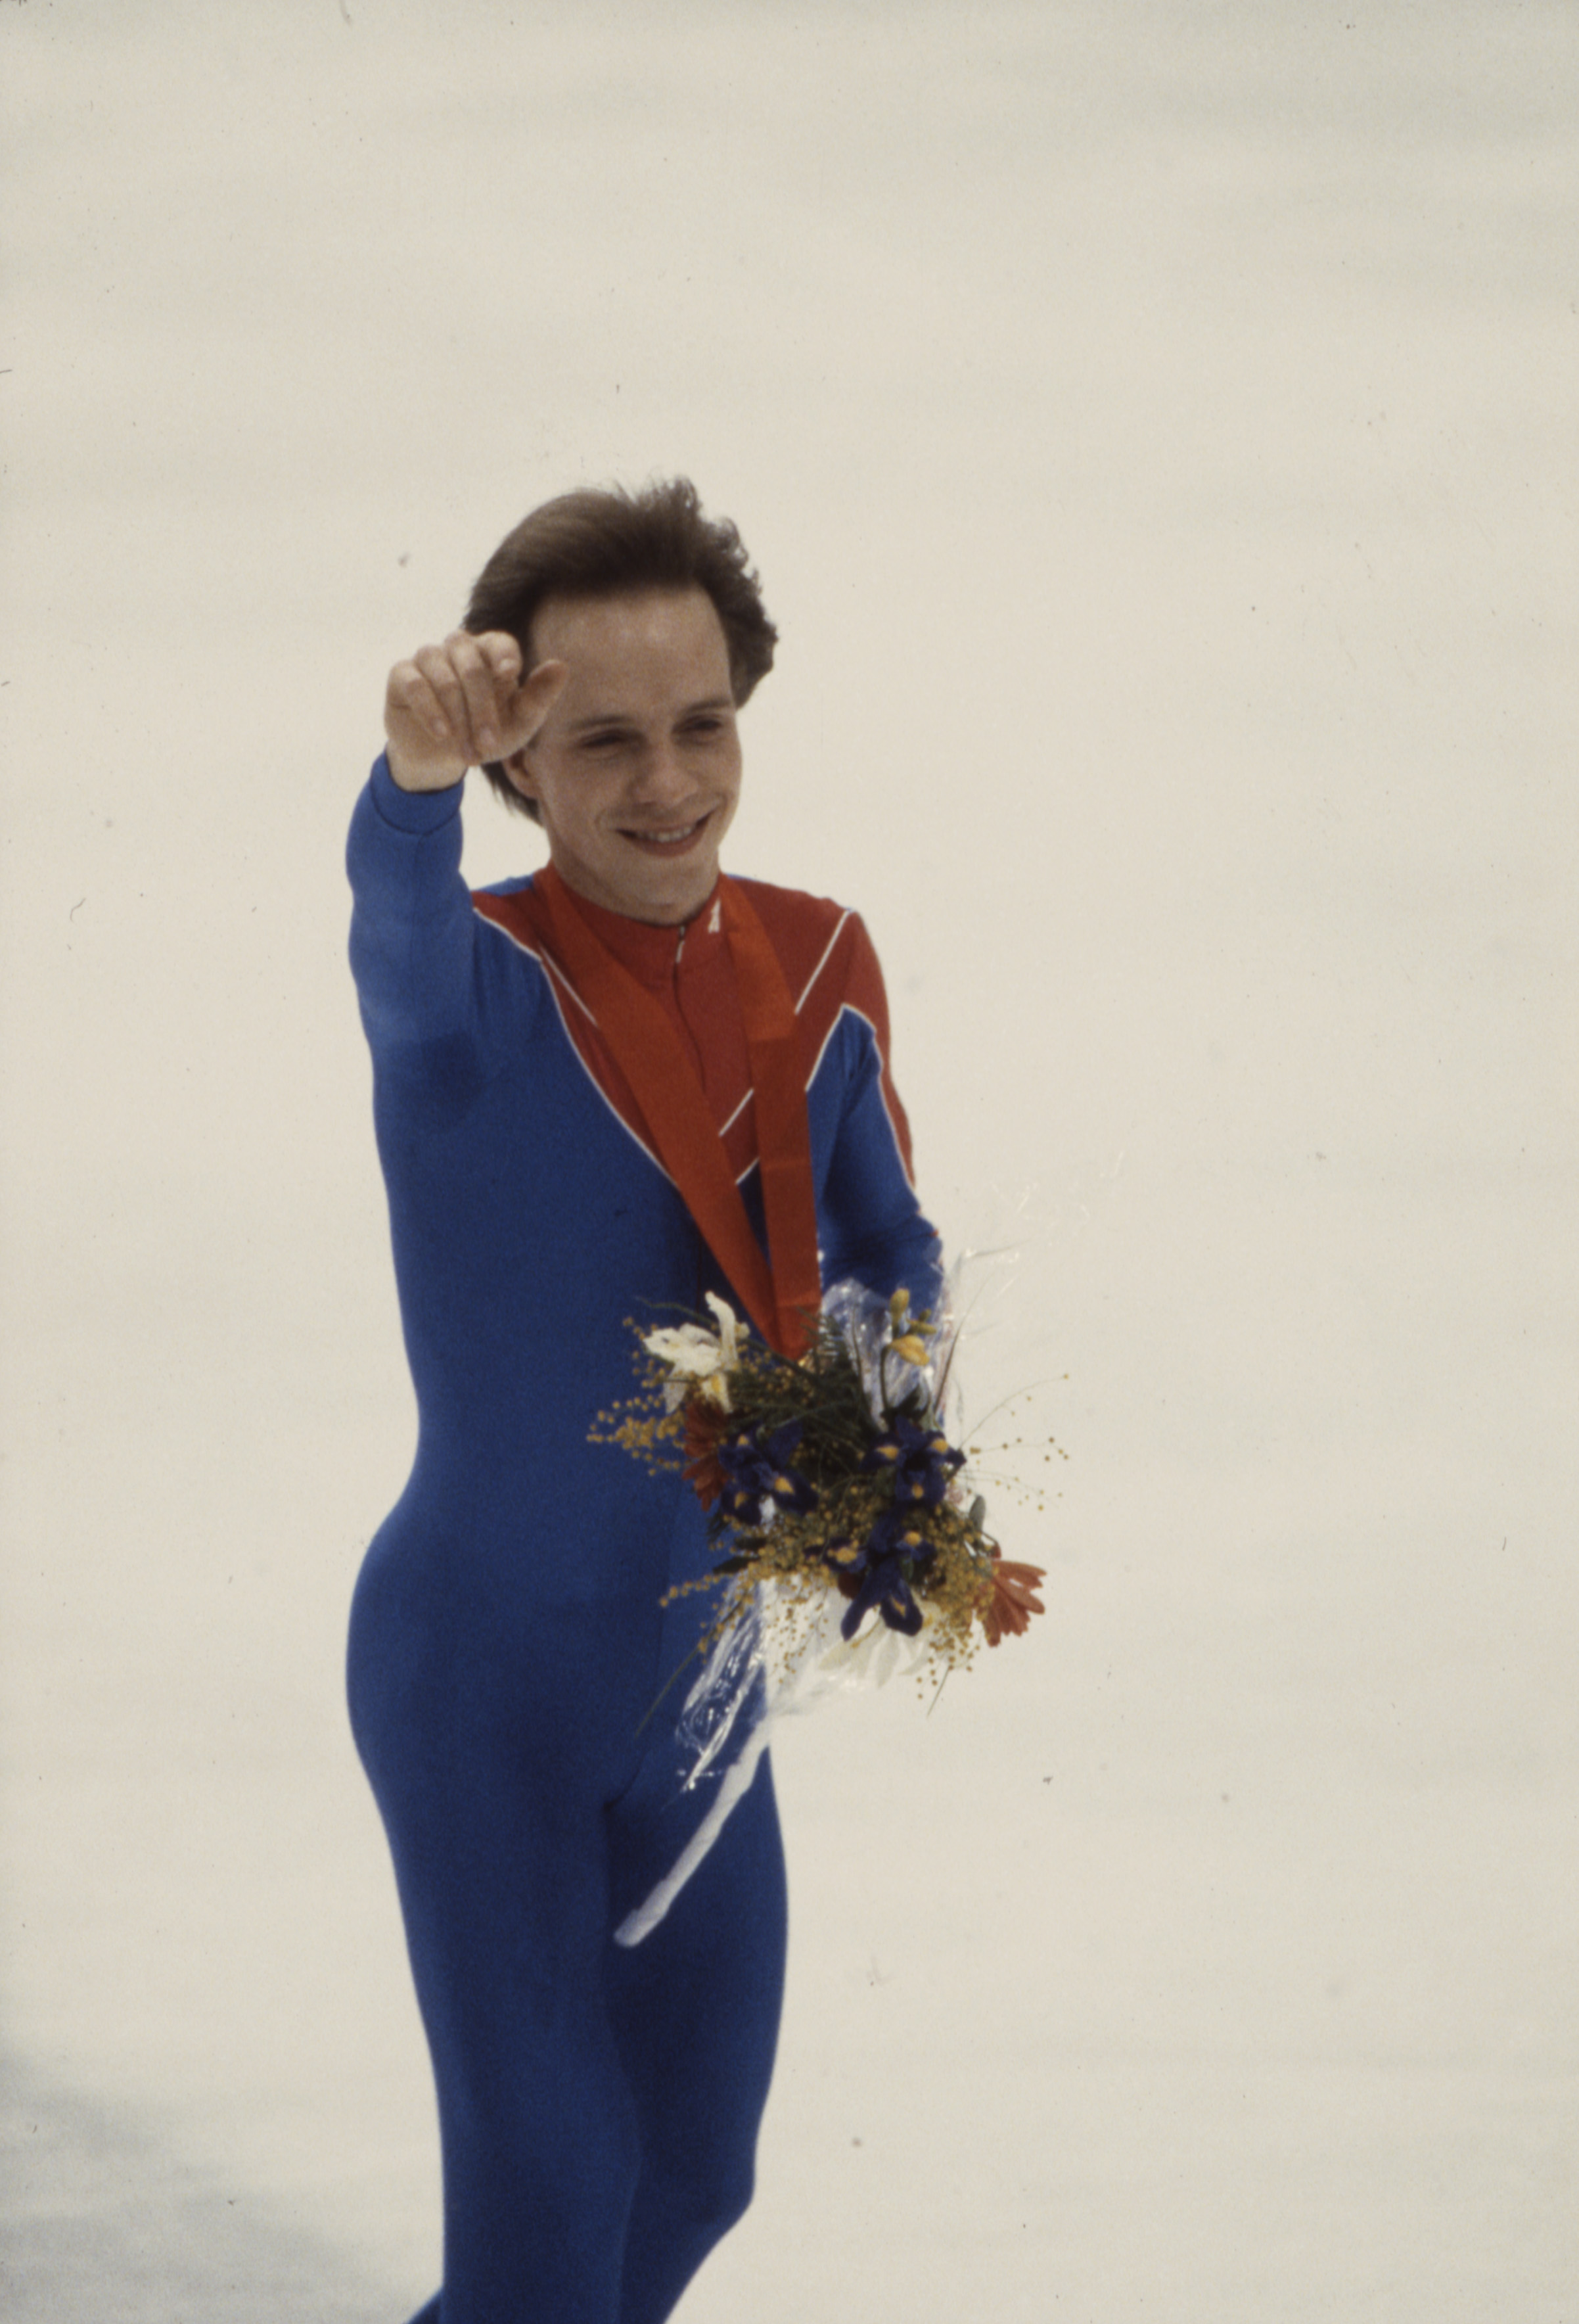 Scott Hamilton durante la ceremonia de entrega de medallas de la prueba masculina de patinaje artístico en los Juegos Olímpicos de Invierno de 1984, el 1 de febrero de 1984 | Foto: Getty Images